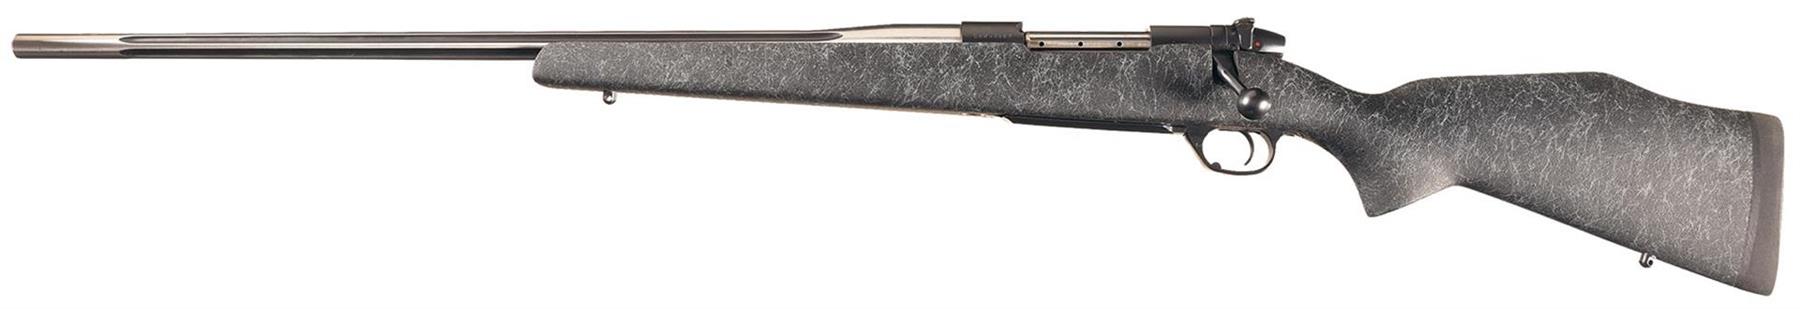 Left Hand Weatherby Mark V 300 Weatherby Magnum Bolt Action Rifle.Manufactu...